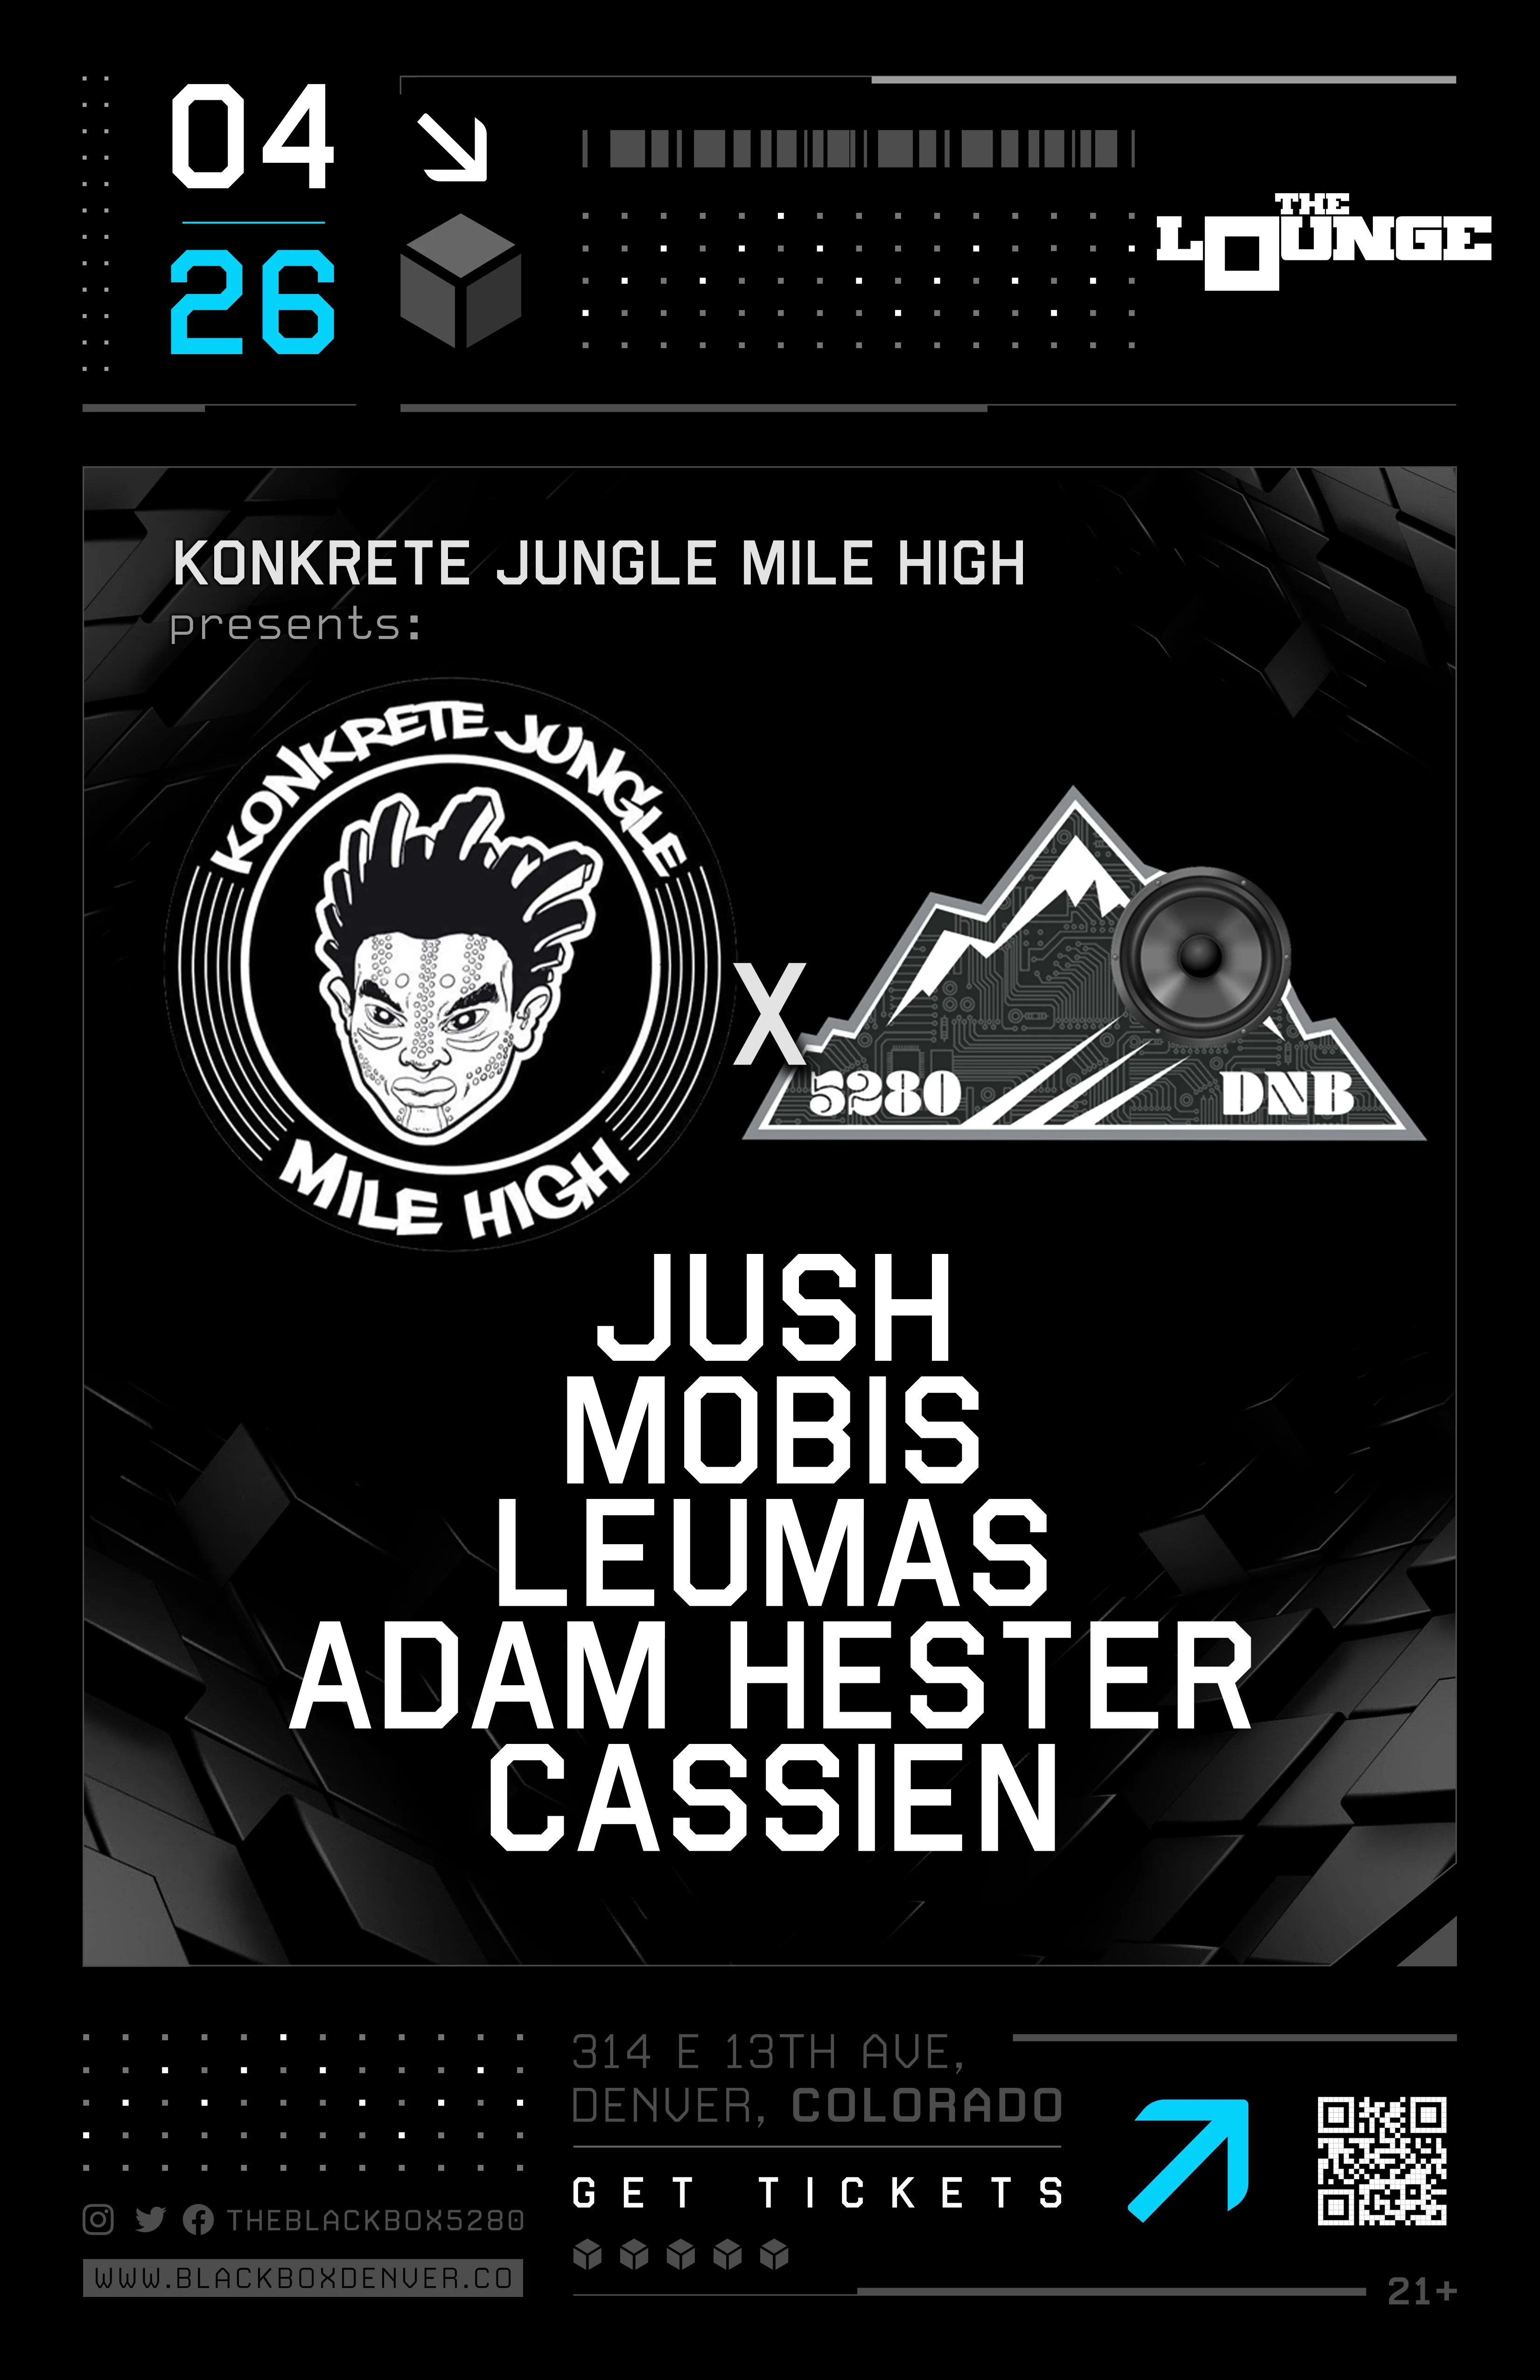 Konkrete Jungle Mile High x 5280 DNB: Jush, Mobis, Leumas, Adam Hester, Cassien